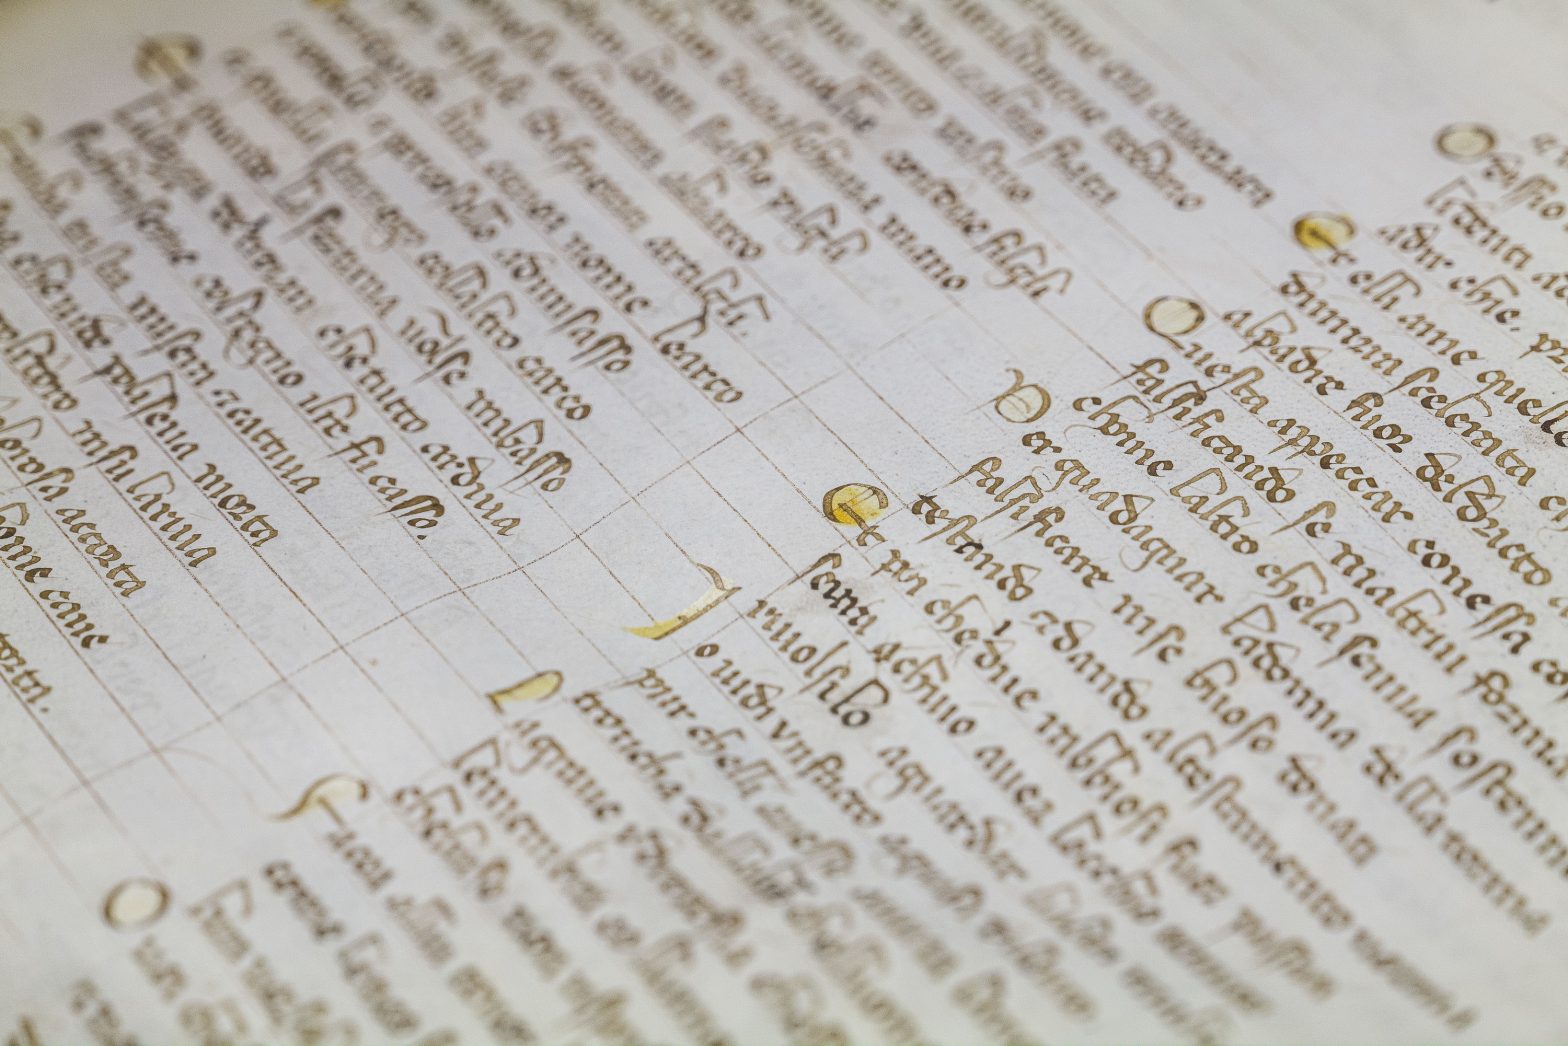 La storia del manoscritto più antico della Divina Commedia